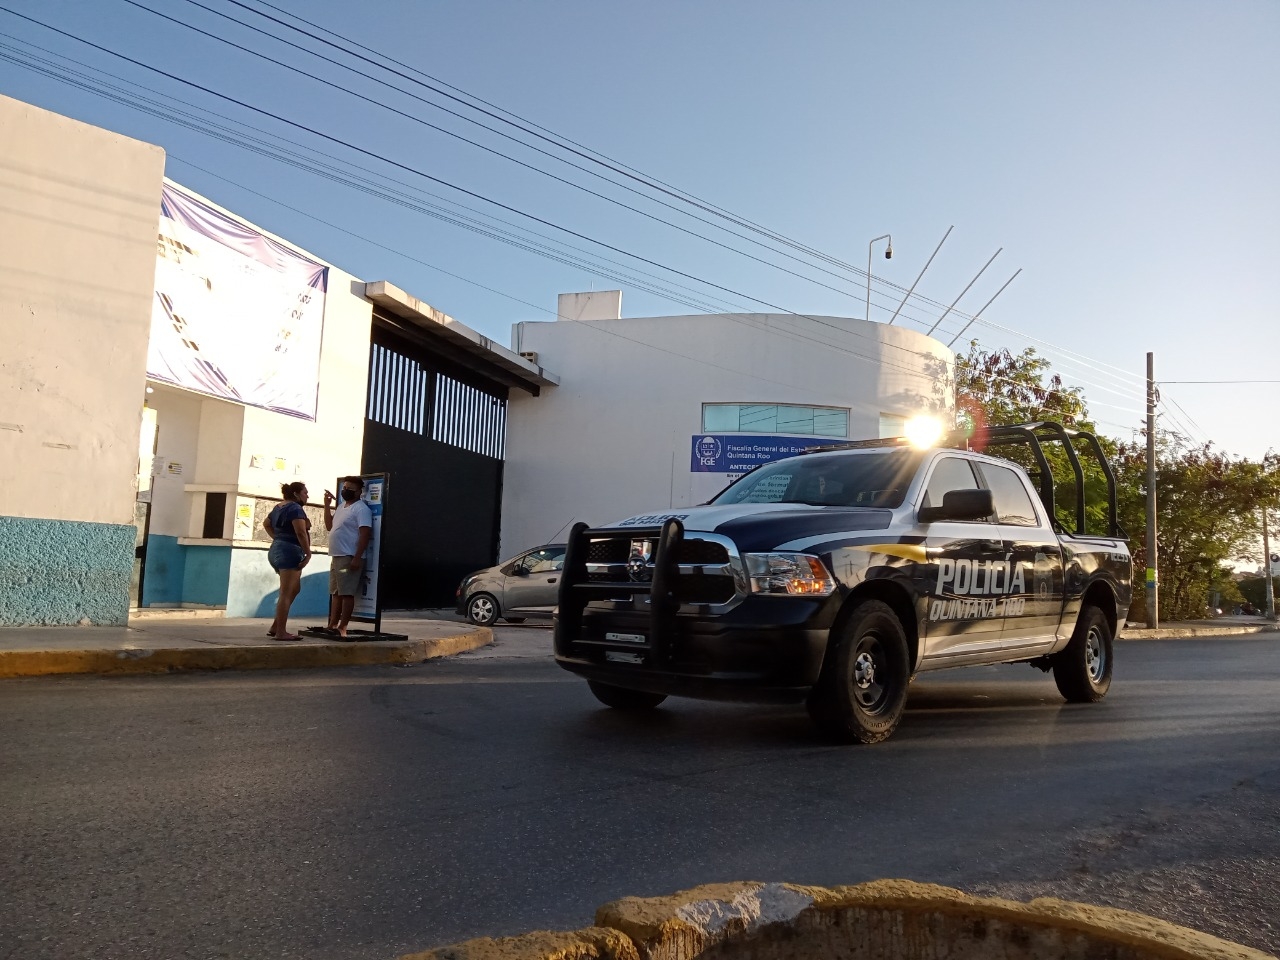 Universitaria sufre 'secuestro exprés' en Cancún